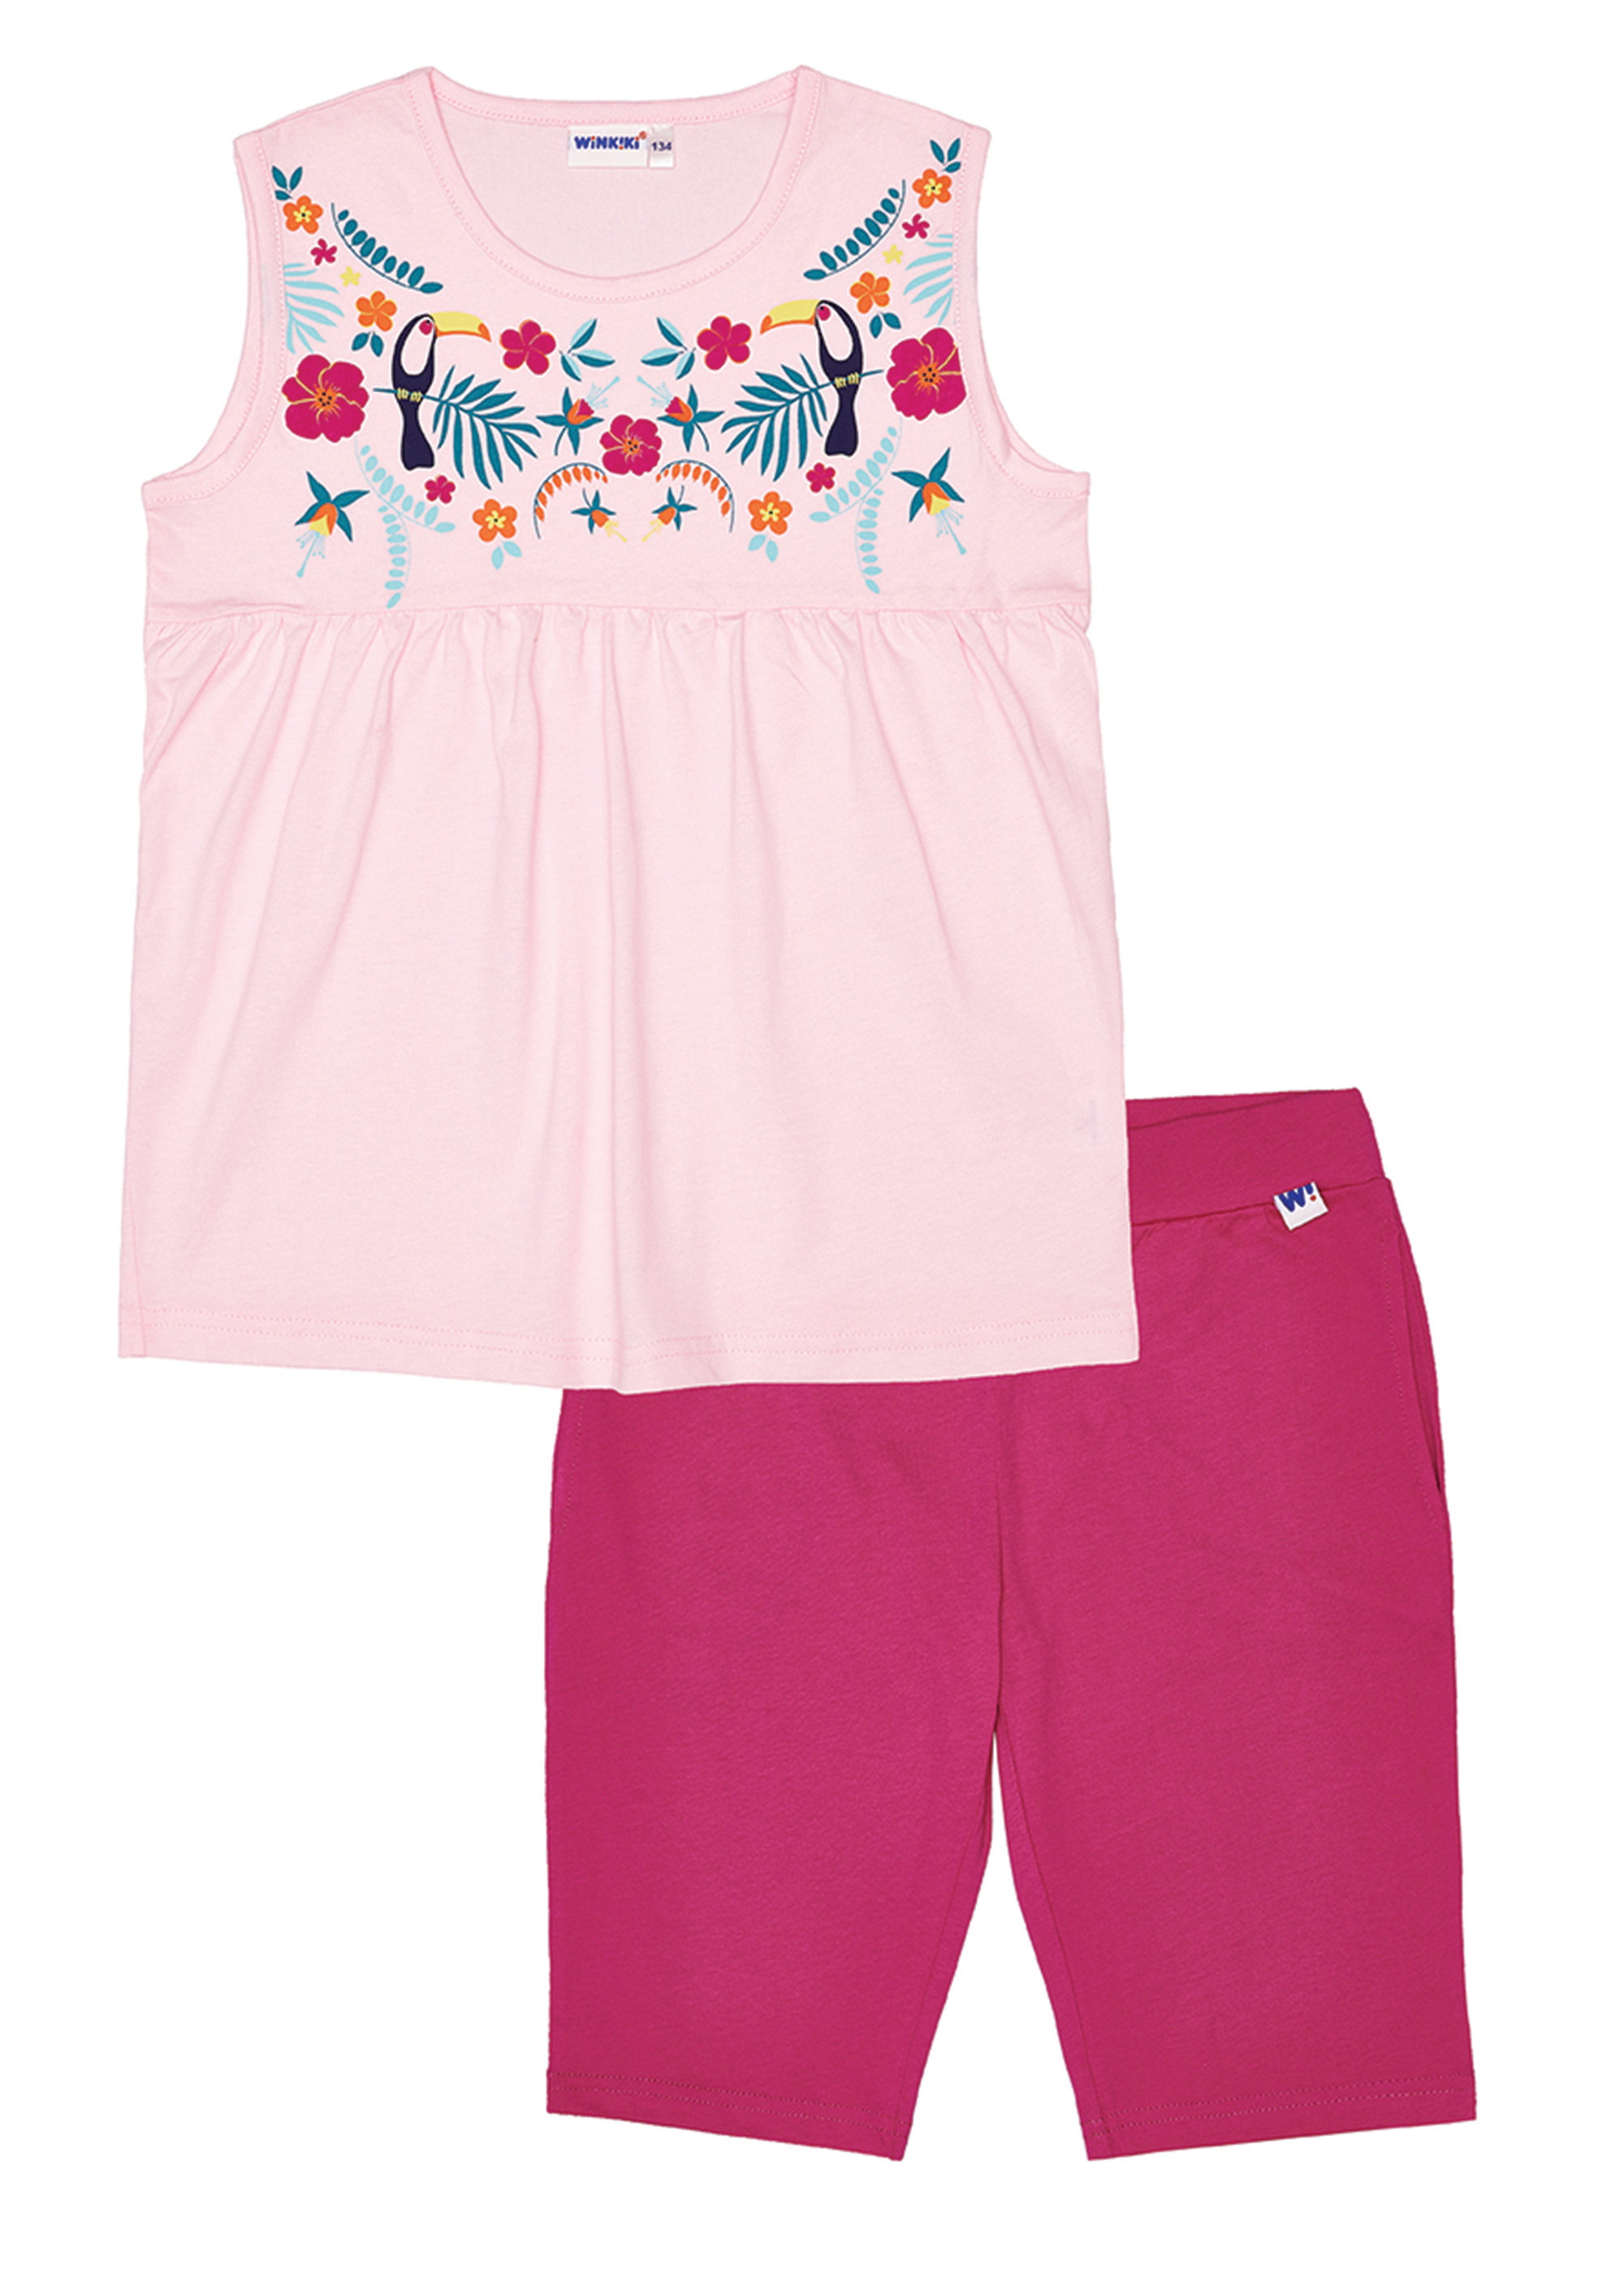 Dívčí pyžamo - Winkiki WJG 91170, růžová Barva: Růžová, Velikost: 152